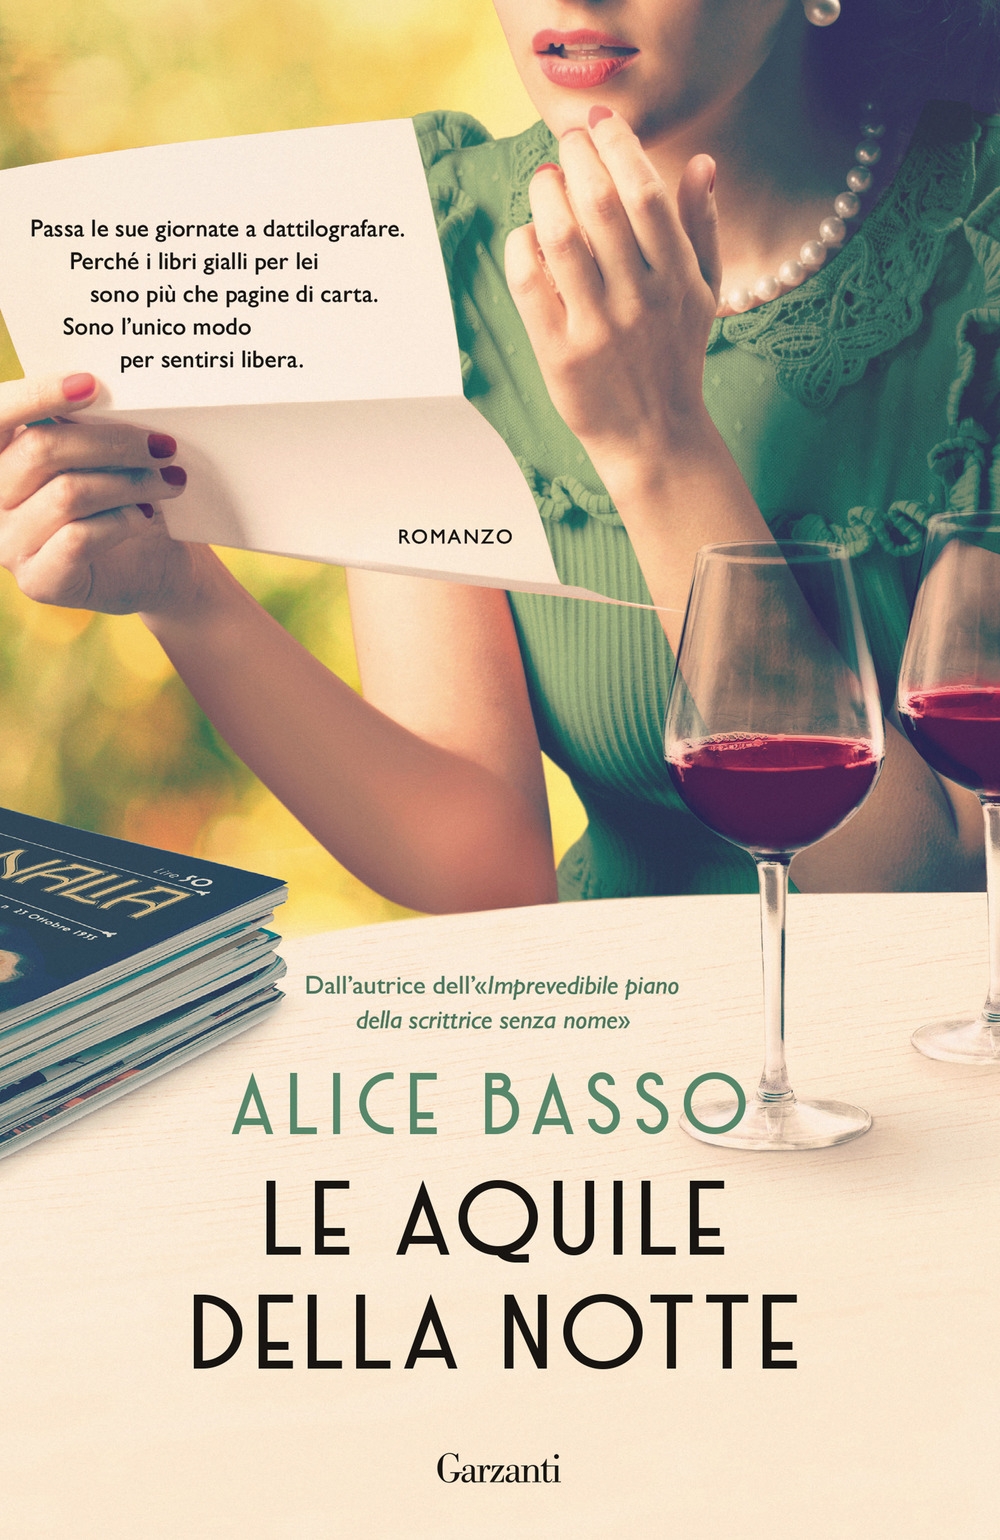 Alice Basso Biografia